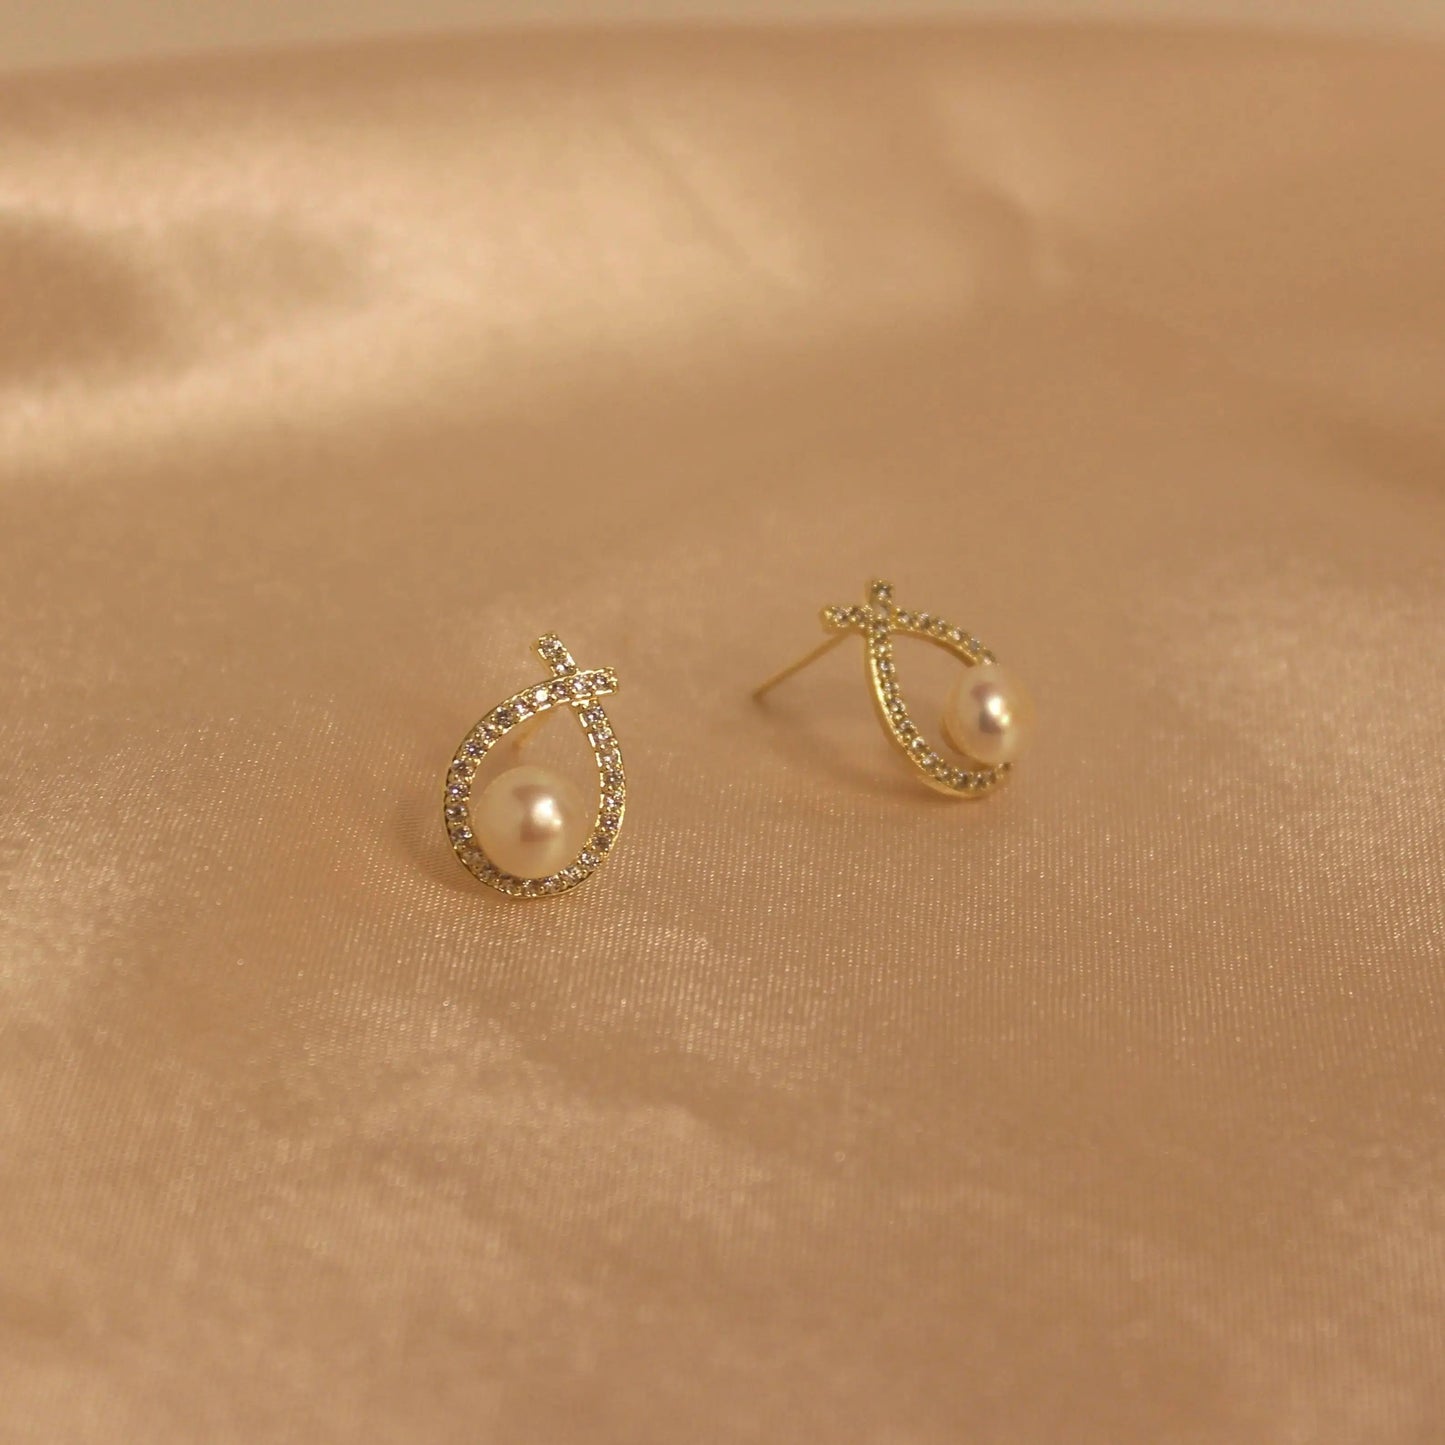 Wassertropfen Perlenset Schmuck Online ¦ JK Jewelry & Accessories